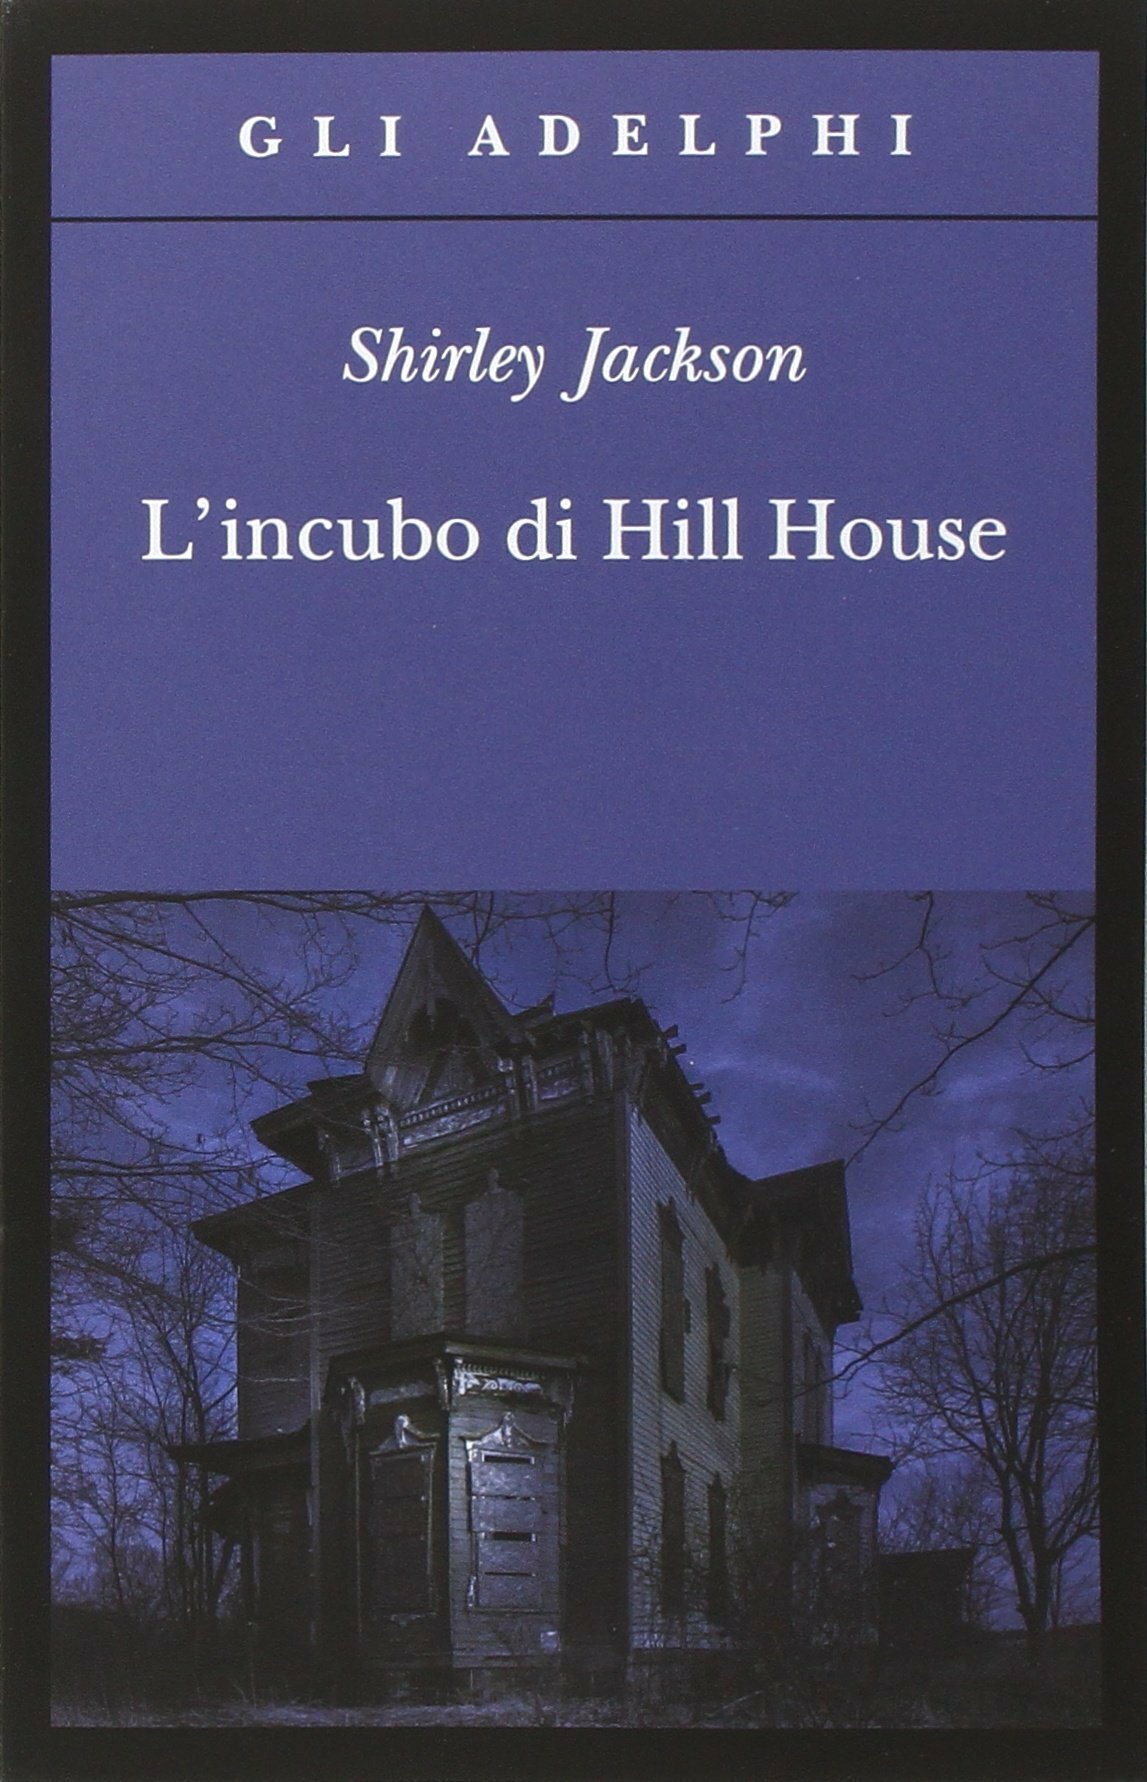 L'incubo di Hill House è distribuito in Italia da Adelphi